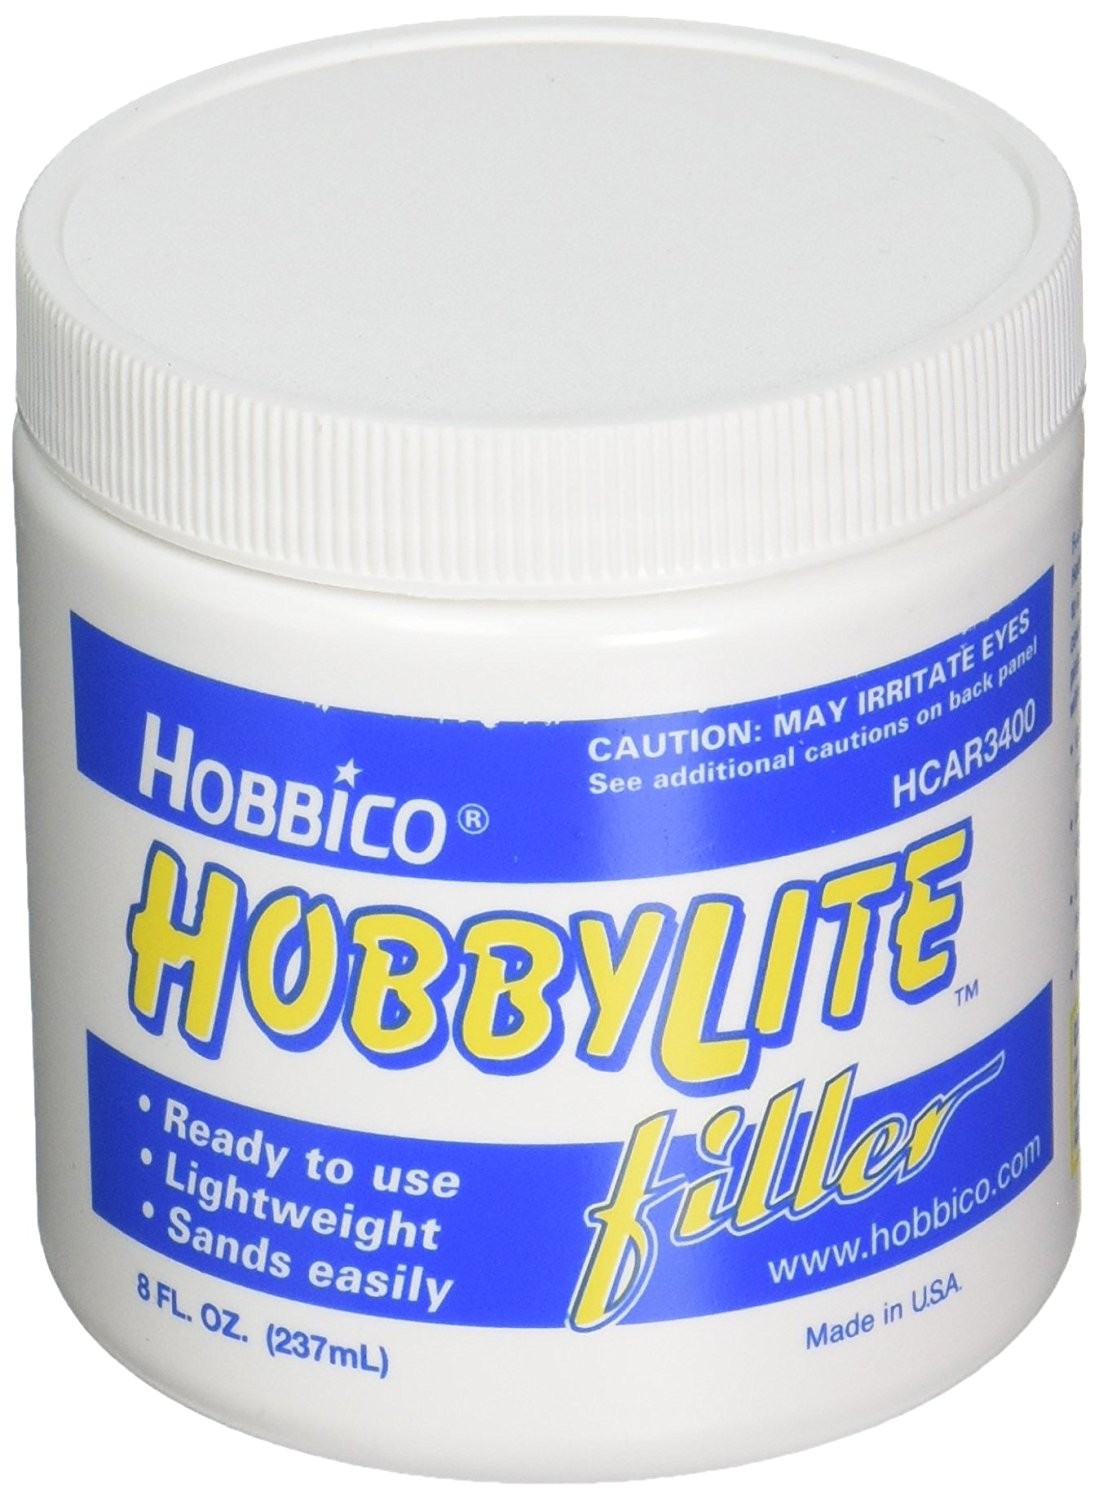 HobbyLite Filler-White